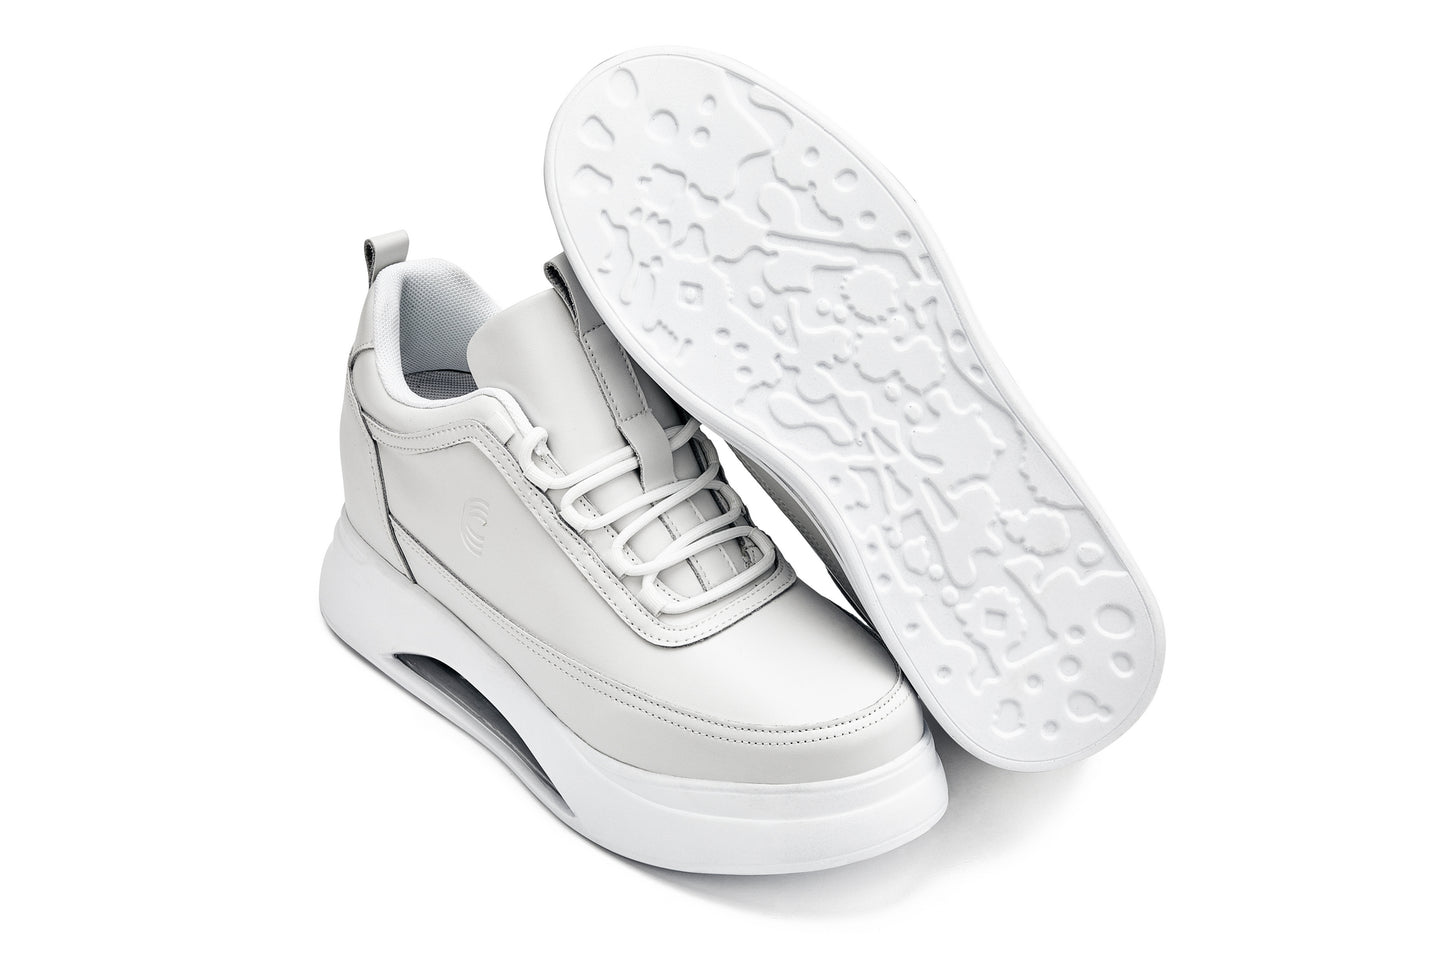 CALTO - S4926 - 3.2 pulgadas más alto (blanco) - Zapatillas deportivas